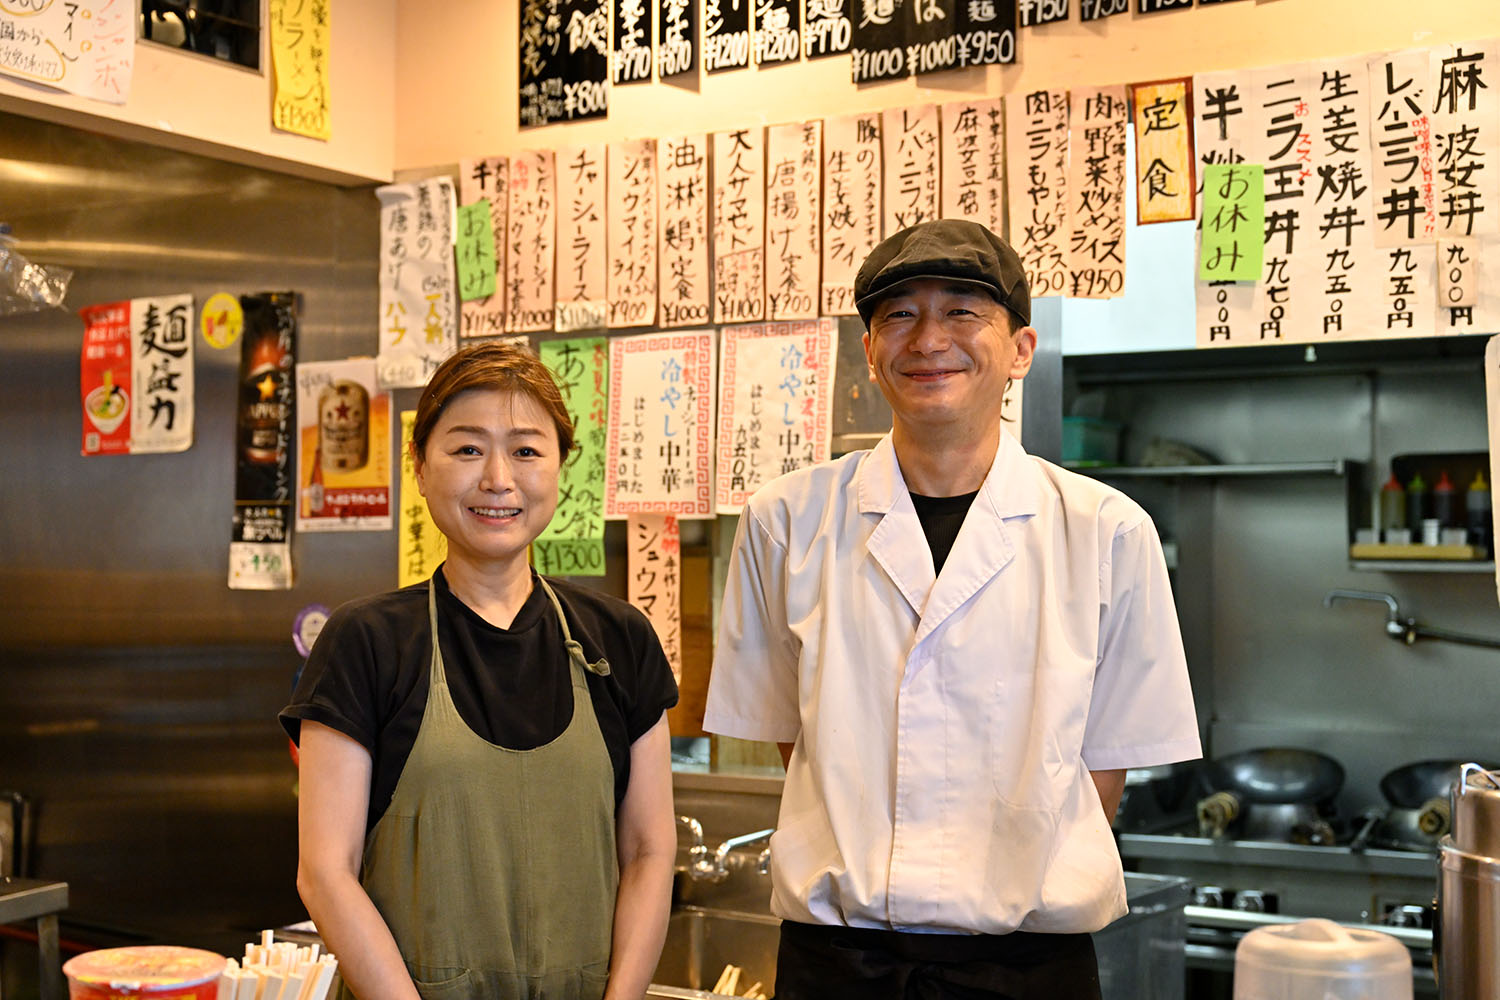 4代目の谷島仁美さん、ここで働き4年ほどという井上壮さん。店は職人に恵まれ歴史を築いてきた。